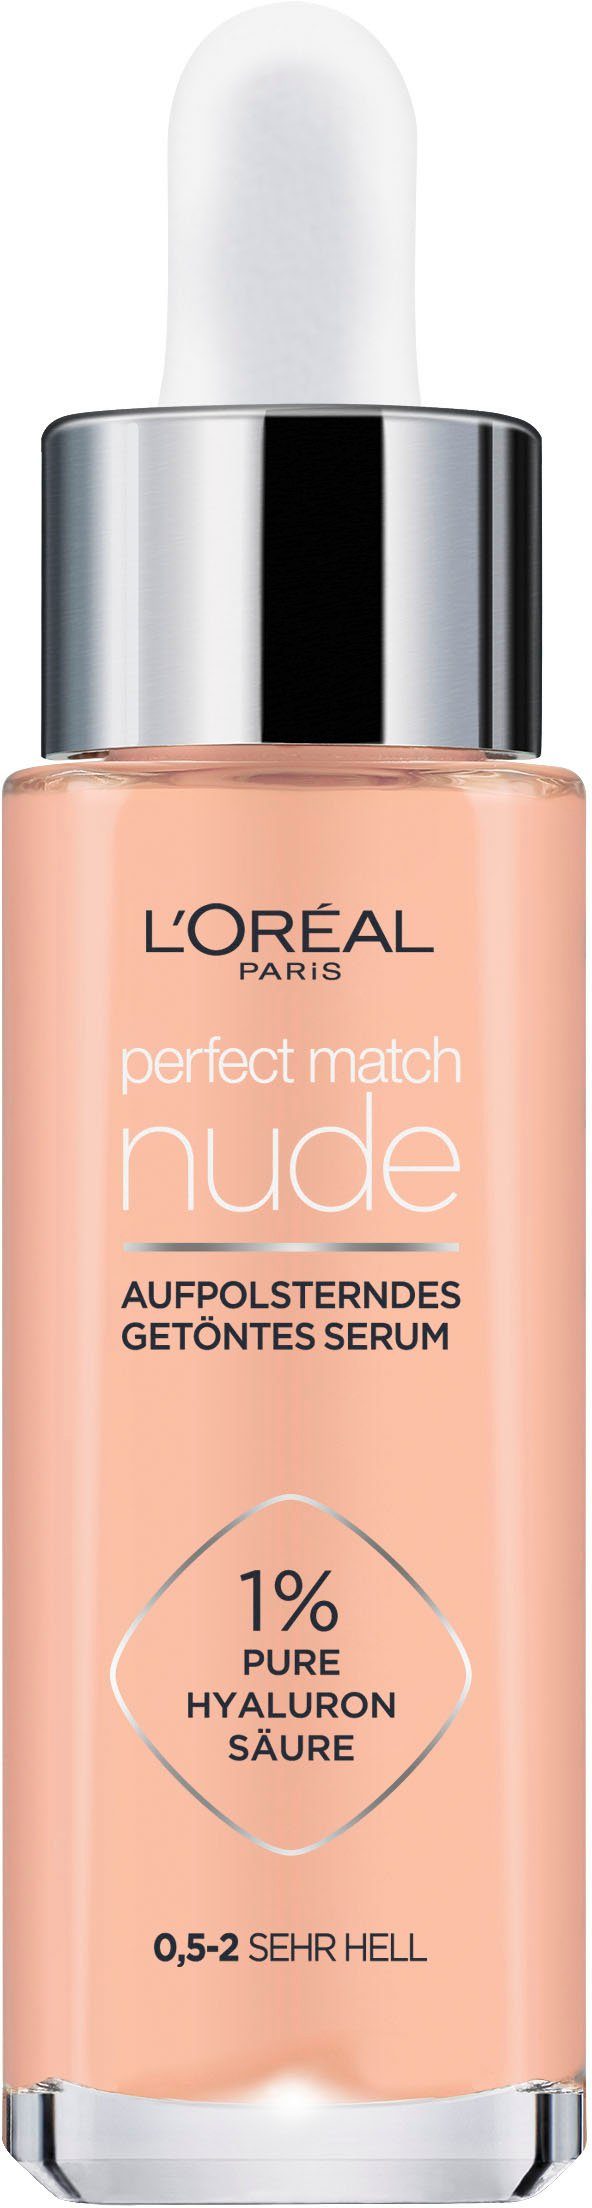 [Beliebte Verkäufe] L'ORÉAL Getöntes PARIS sehr hell Make-up 0,5-2 Serum Match Perfect